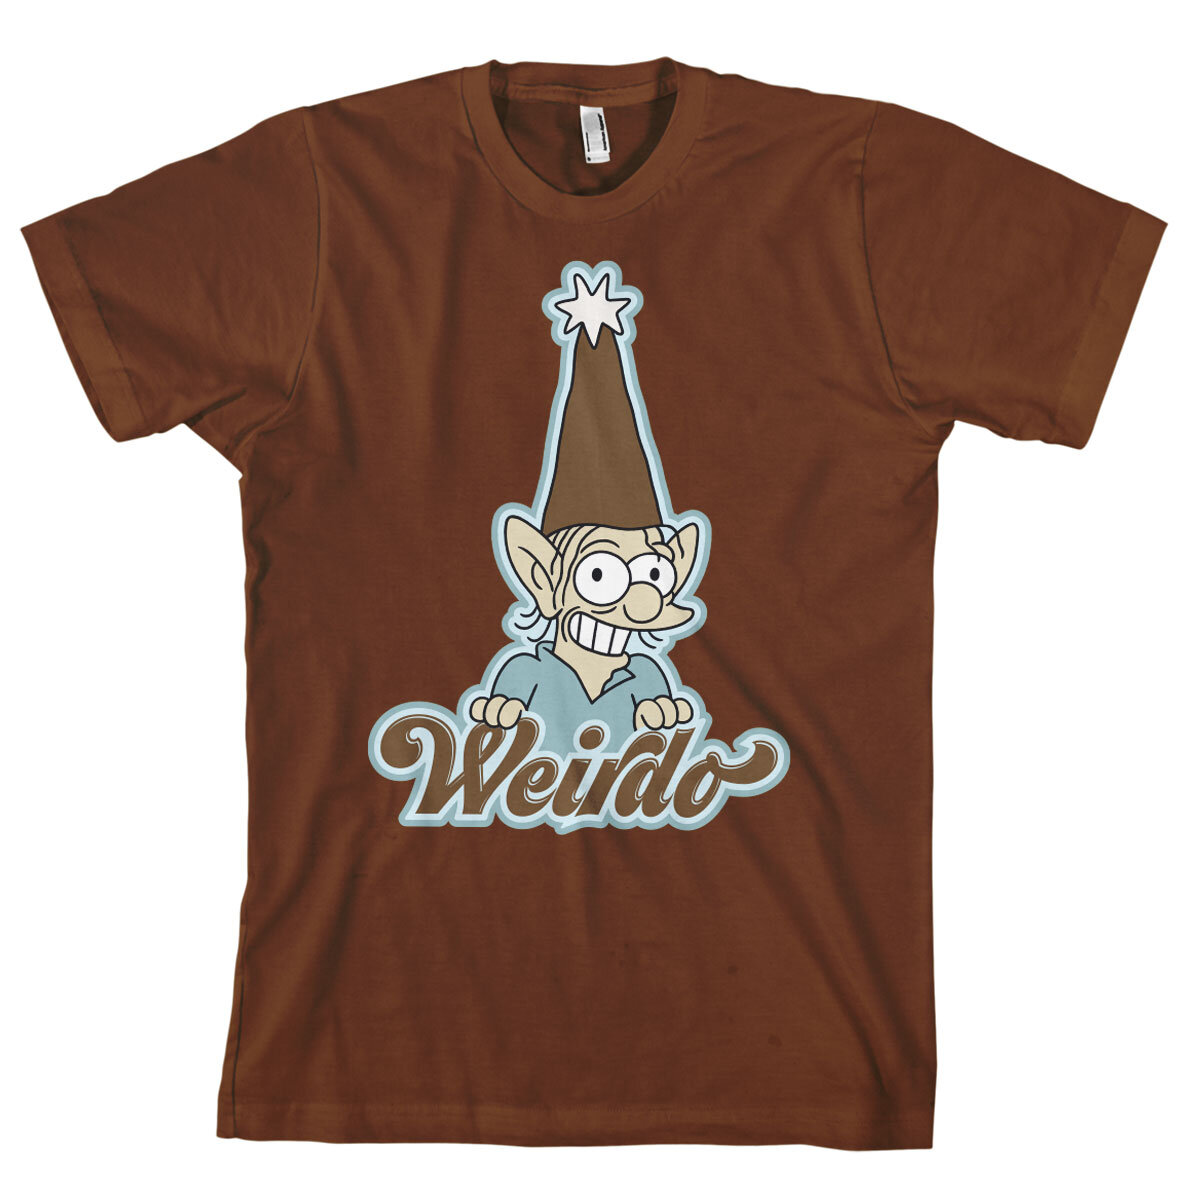 Weirdo T-Shirt